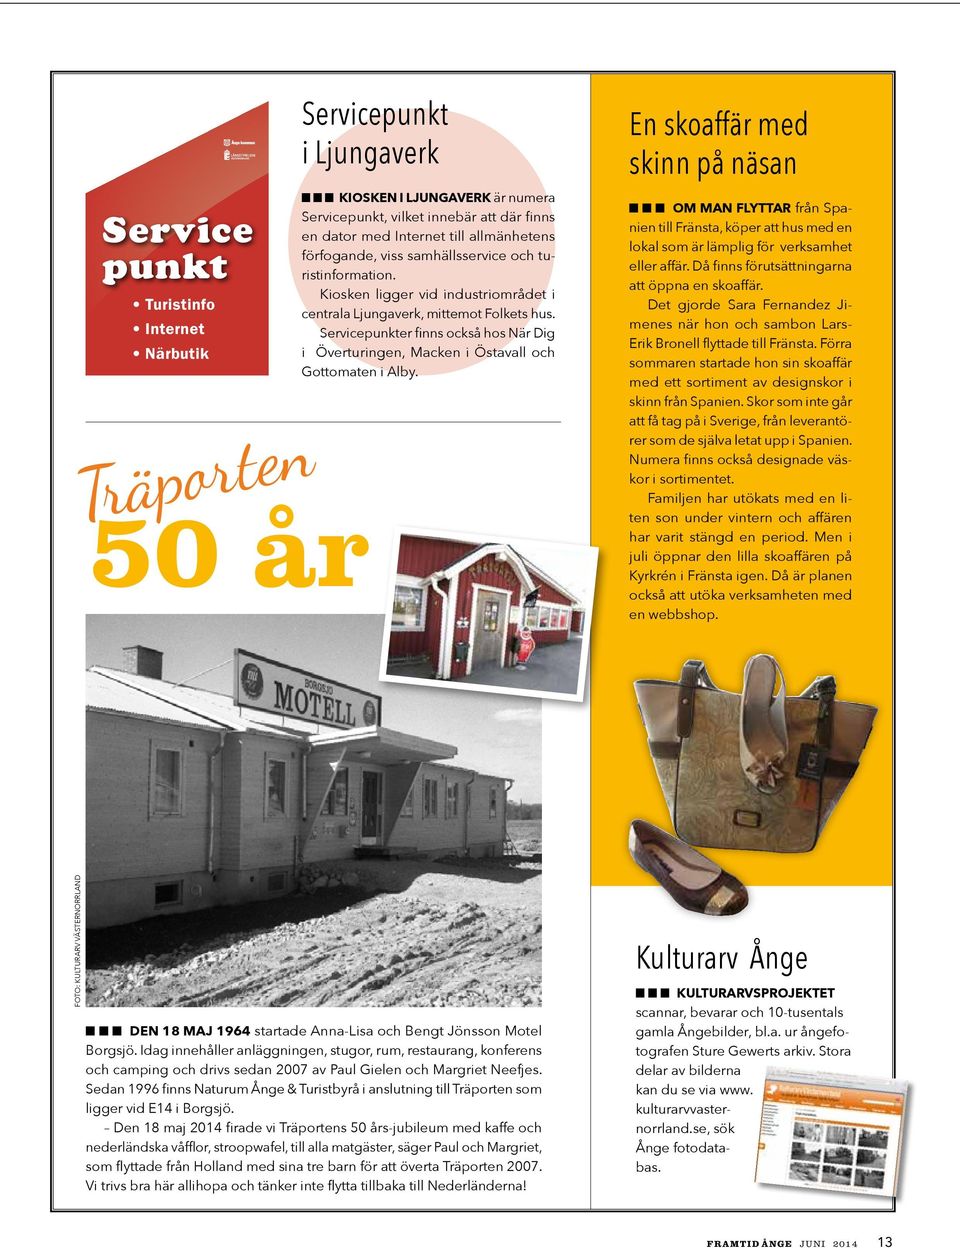 Servicepunkter finns också hos När Dig i Överturingen, Macken i Östavall och Gottomaten i Alby.